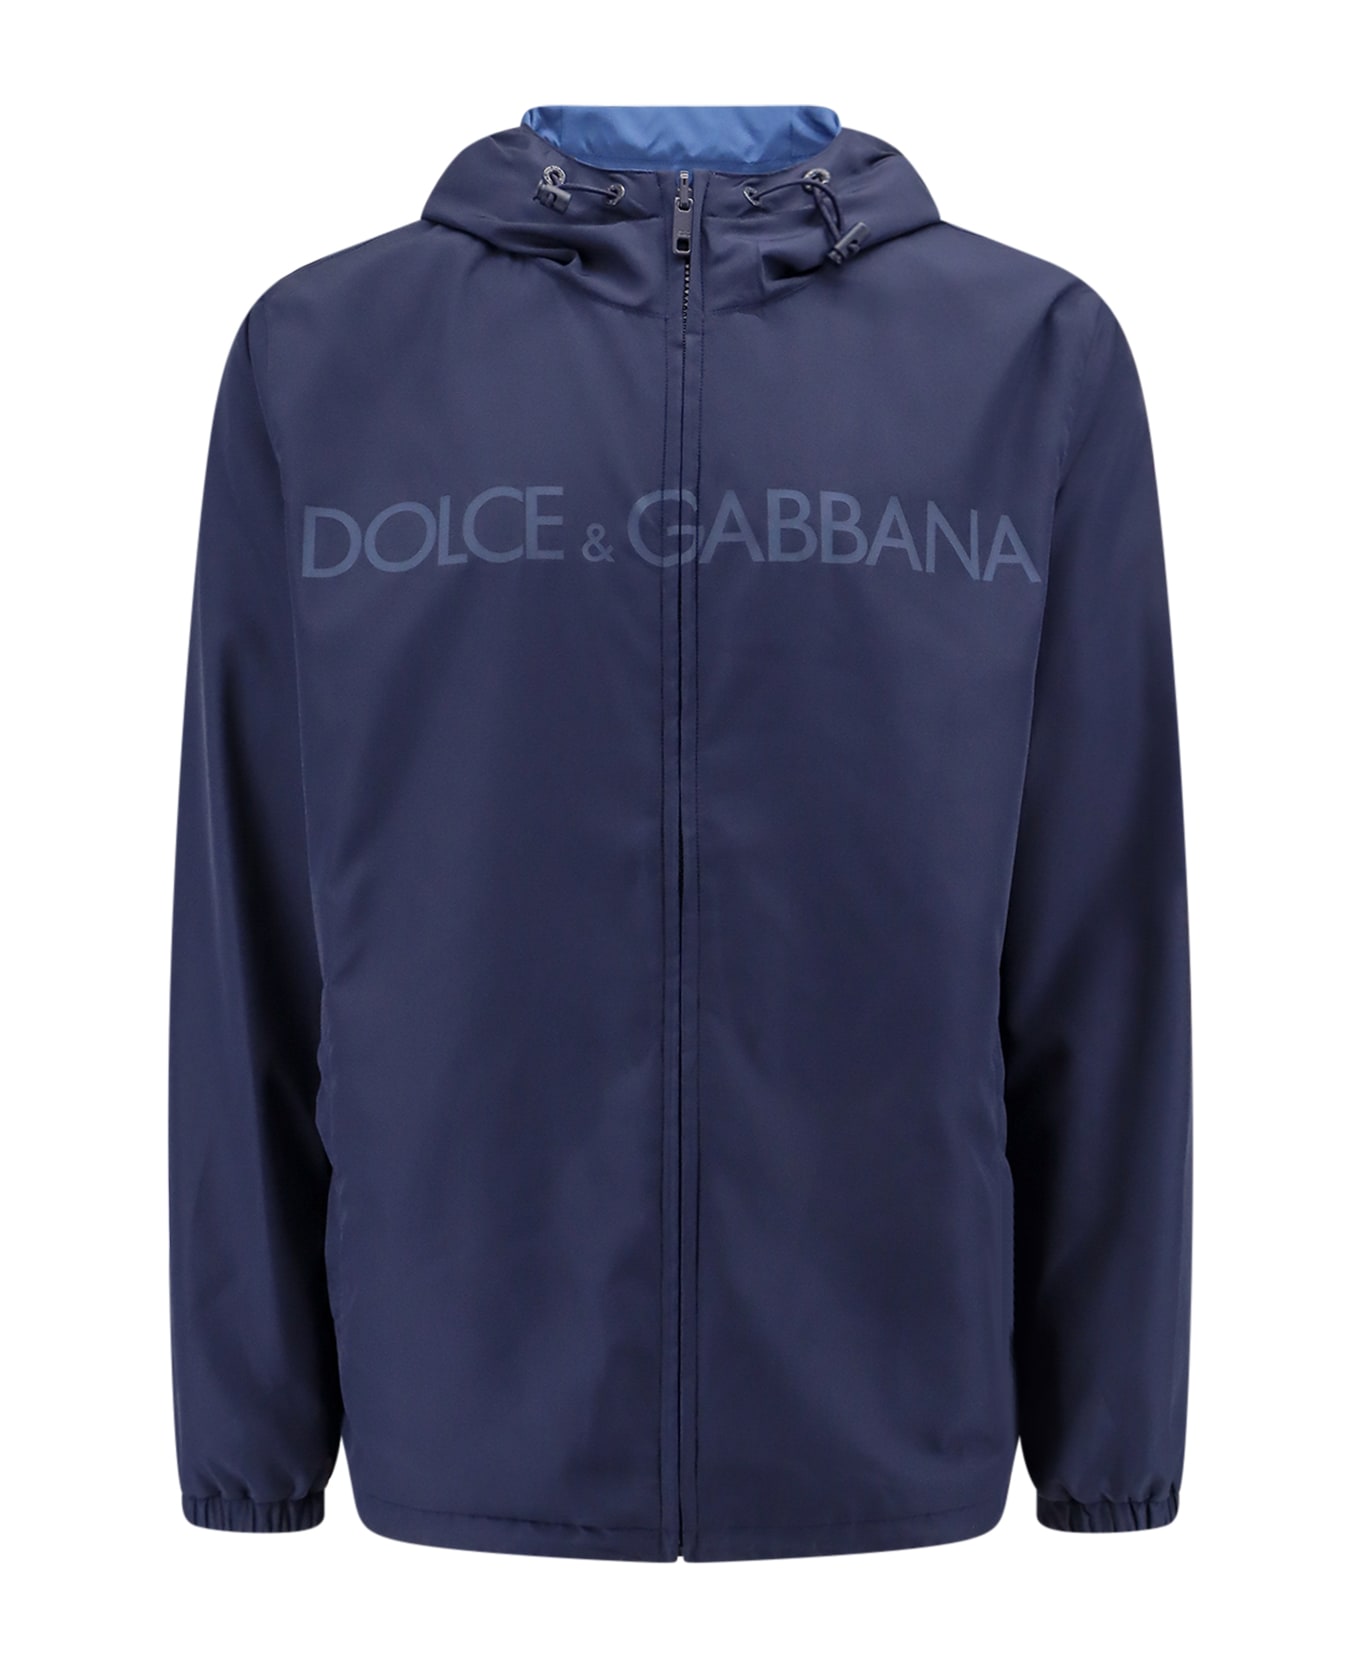 Dolce & Gabbana Windbreaker Logo Jacket - Blue